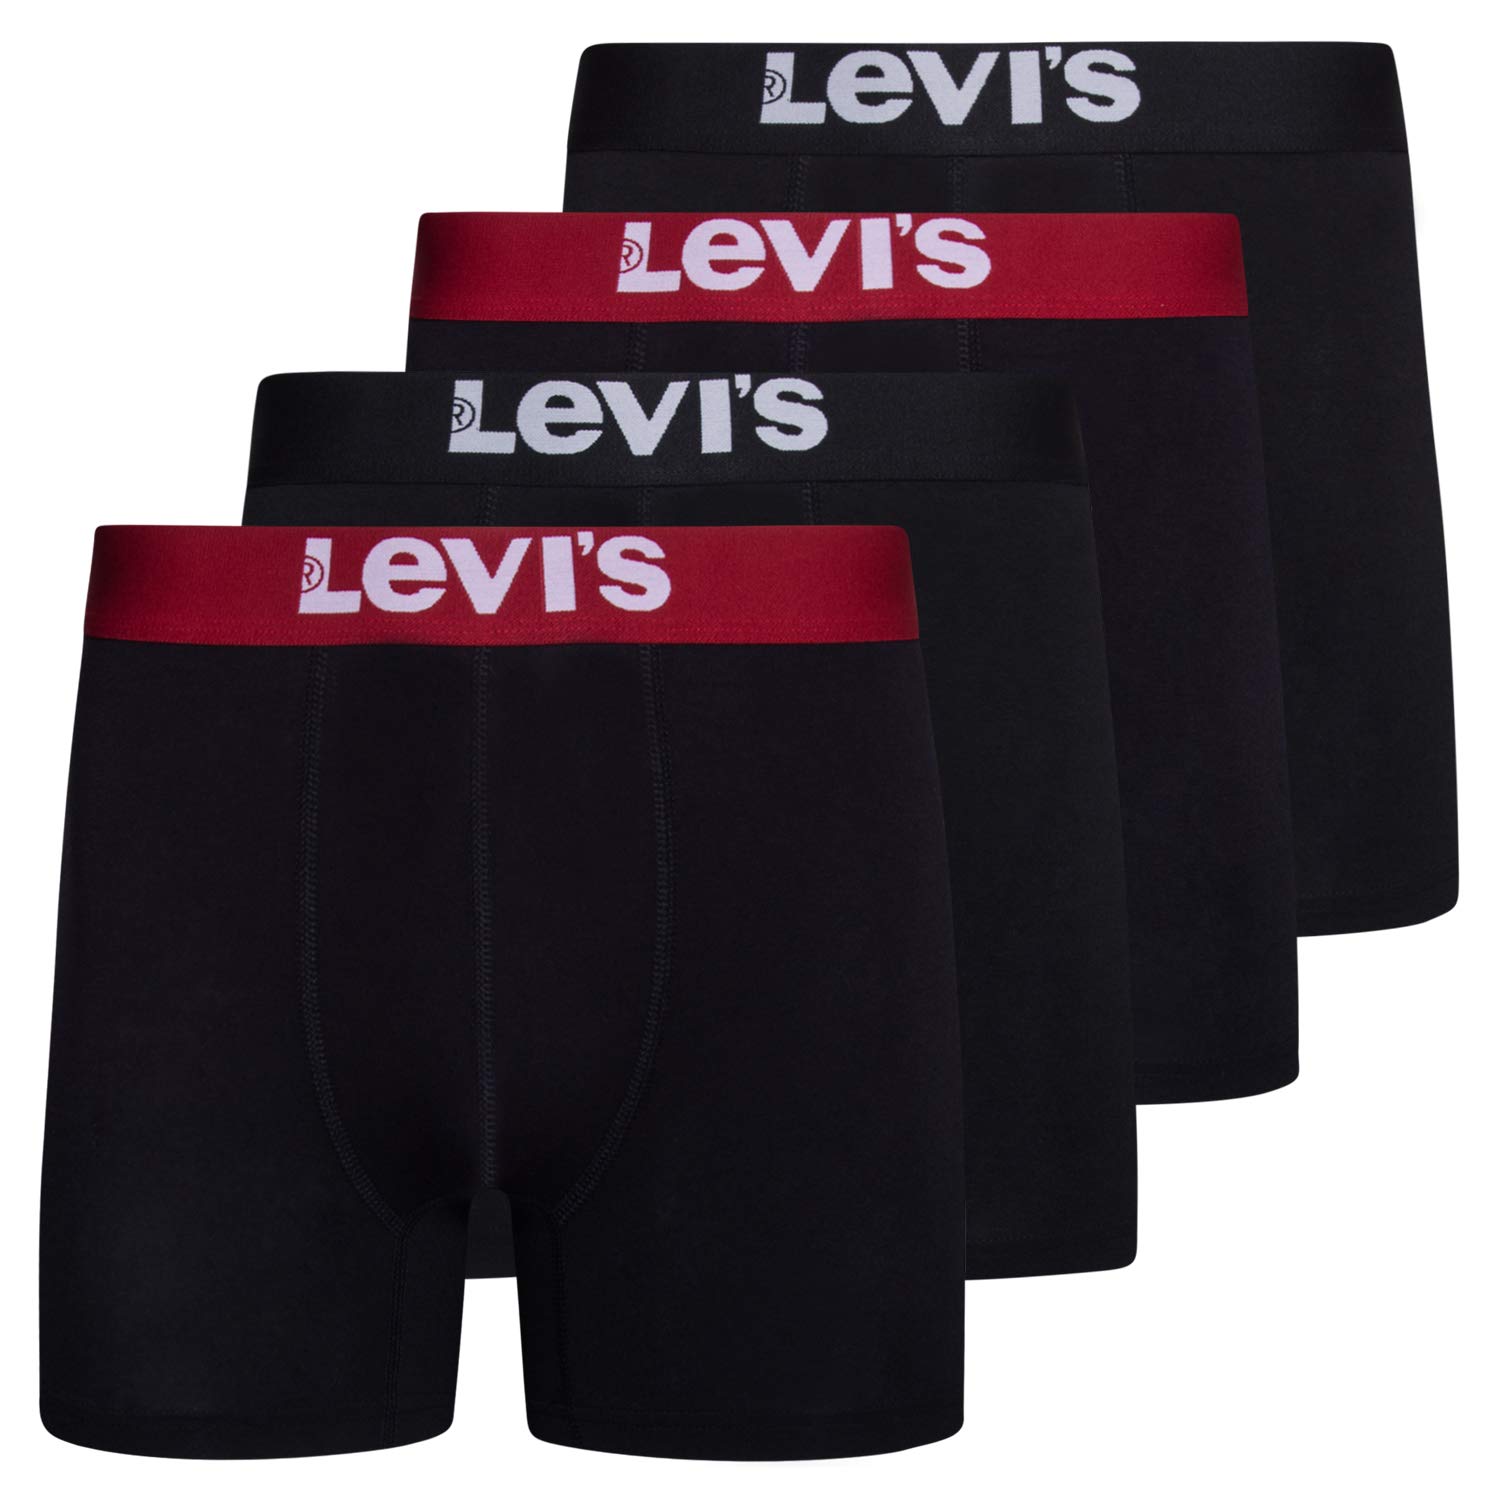 Introducir 59+ imagen levi’s underwear men